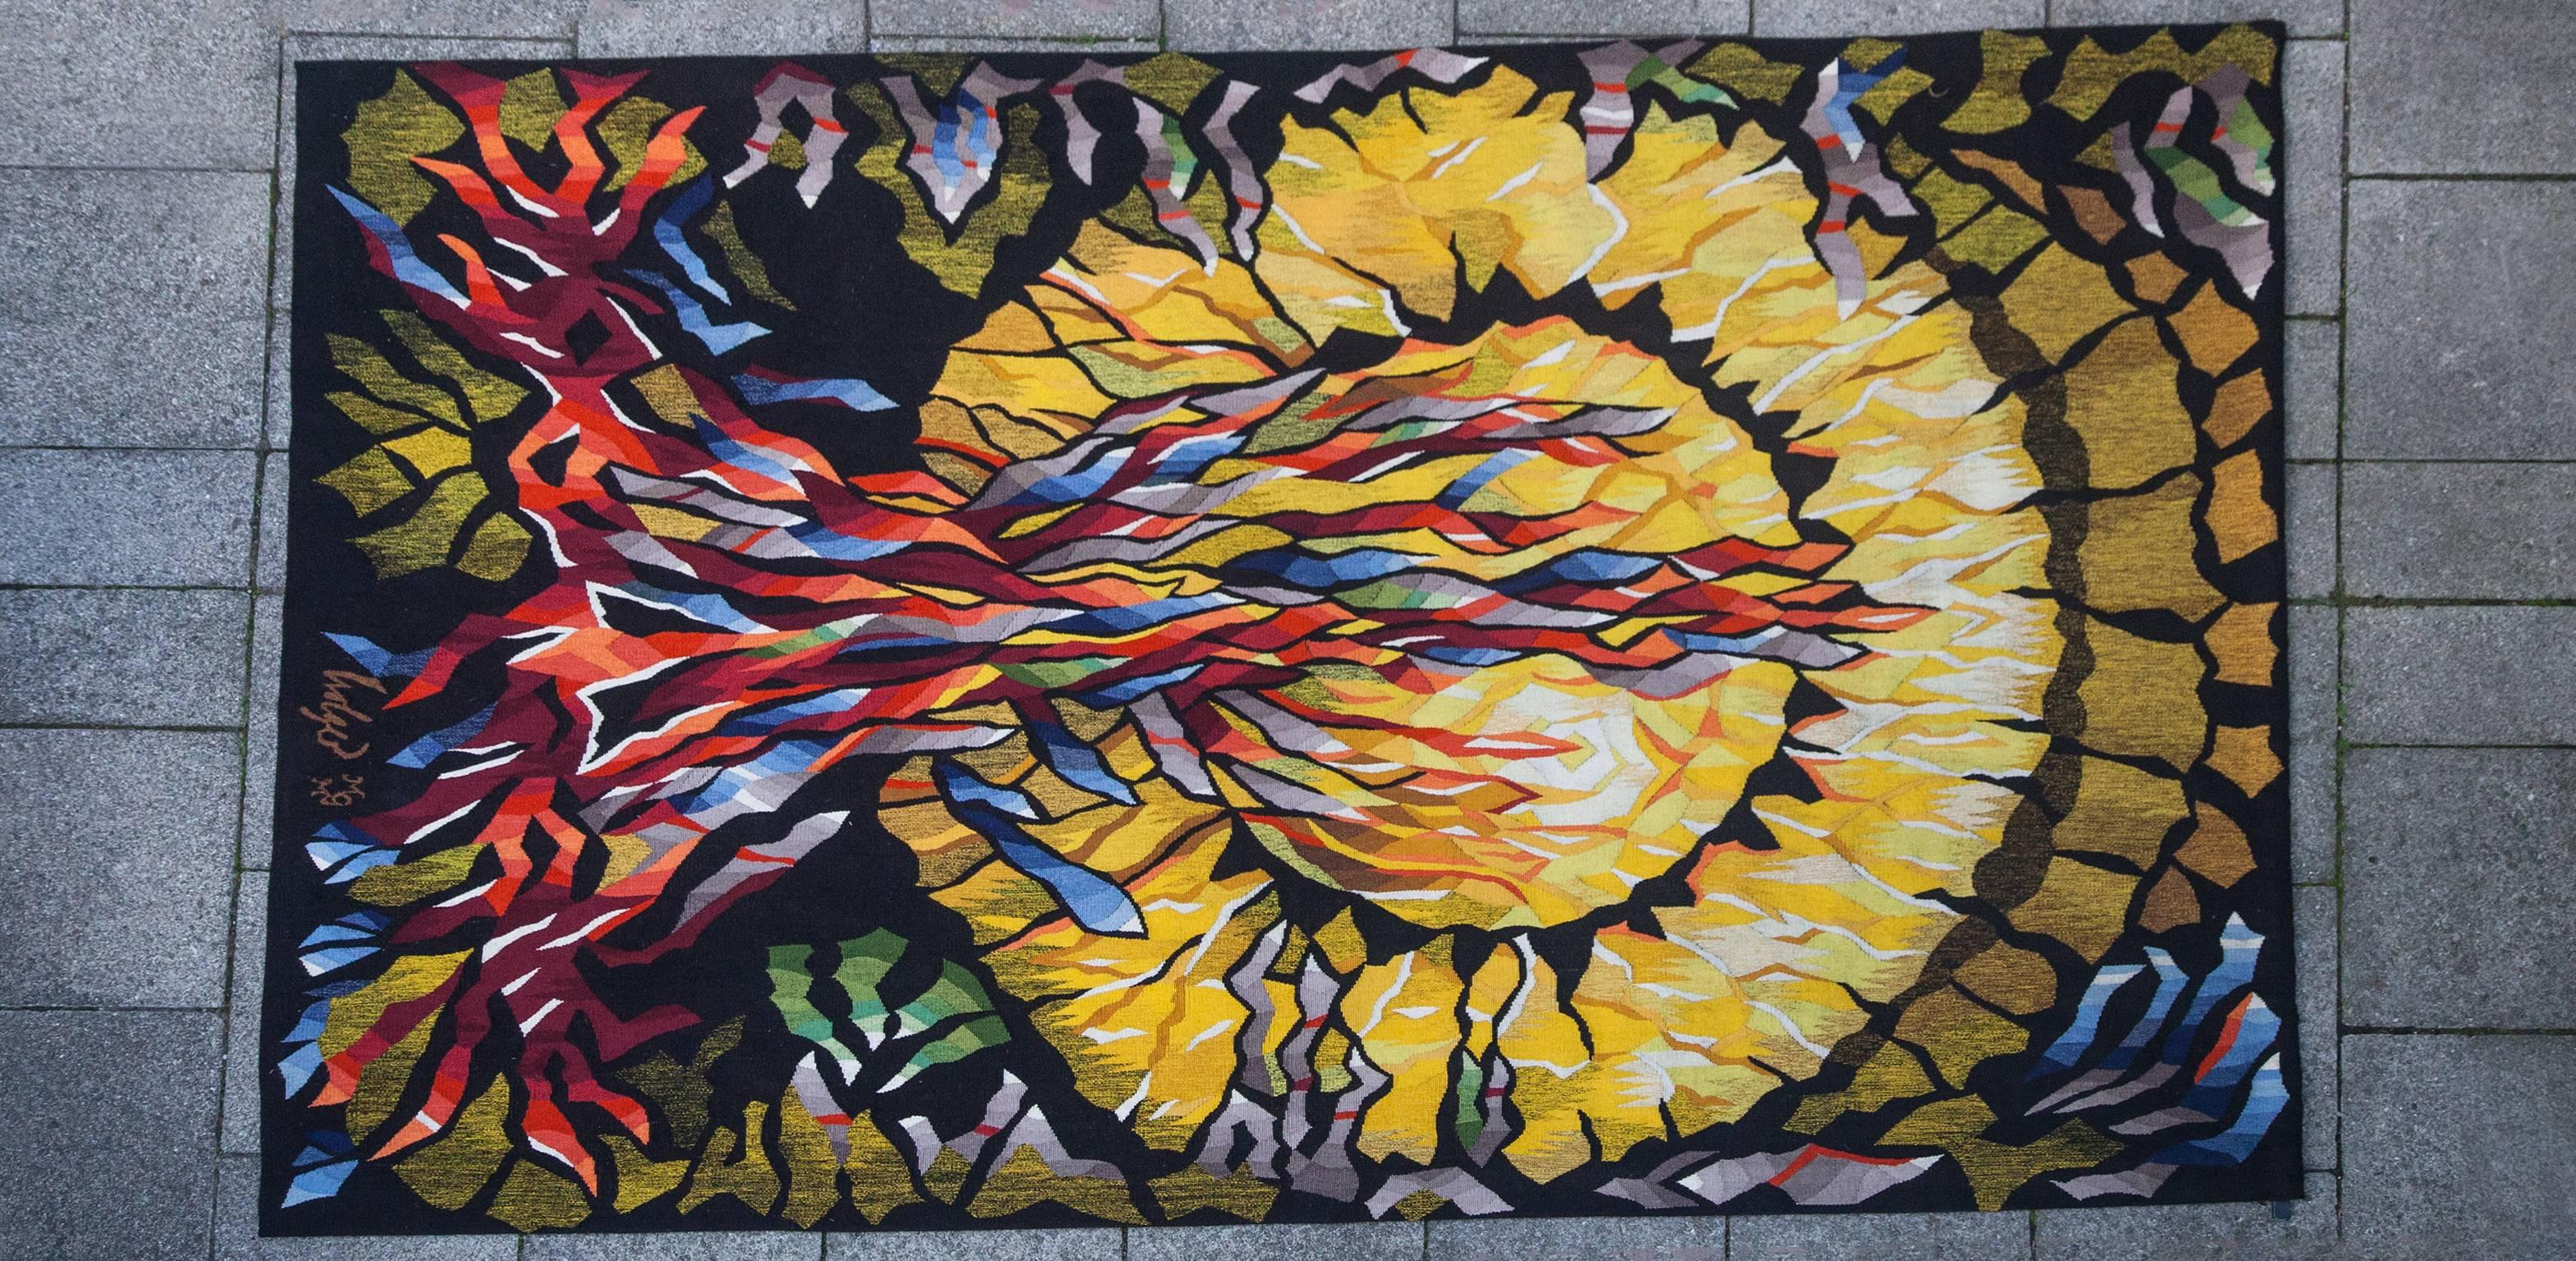 Wandteppich Feuersonne auf schwarzem Grund, entworfen von Dirk Holger (geboren 1939). Herstellung Münchner Gobelinmanufaktur, um 1970. 
Maße: 240 x 149 cm.